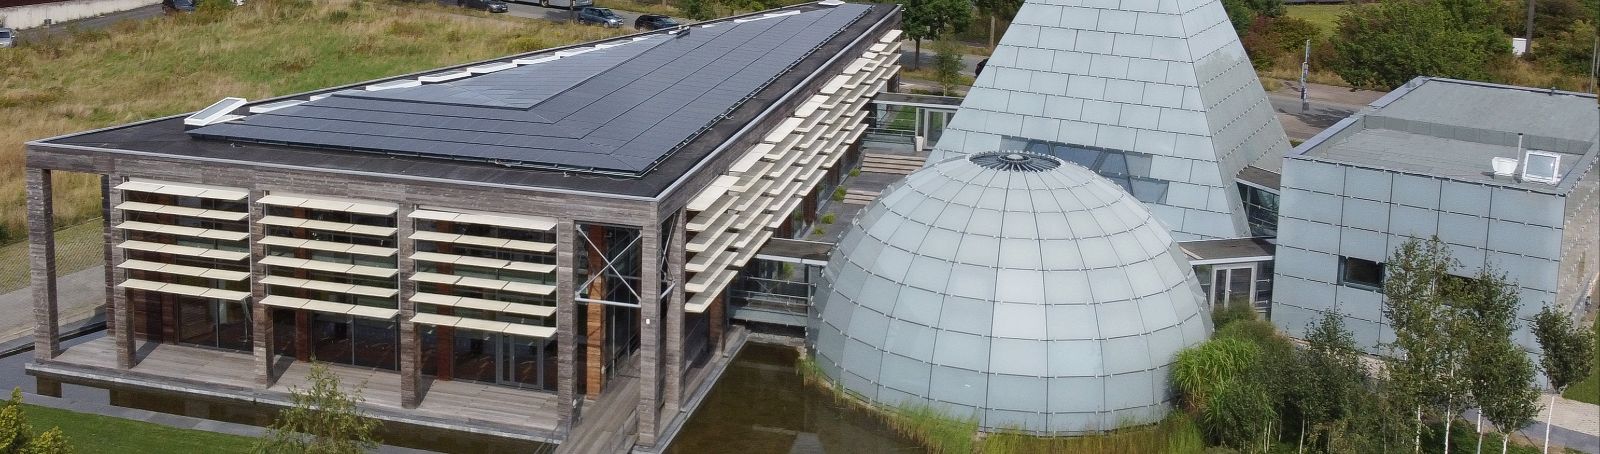 20 Jahre nach der Expo 2000 in Hannover präsentiert sich der Dänische Pavillon als innovatives Plusenergiegebäude mit fast 2.000 m<sup>2</sup> Fläche.